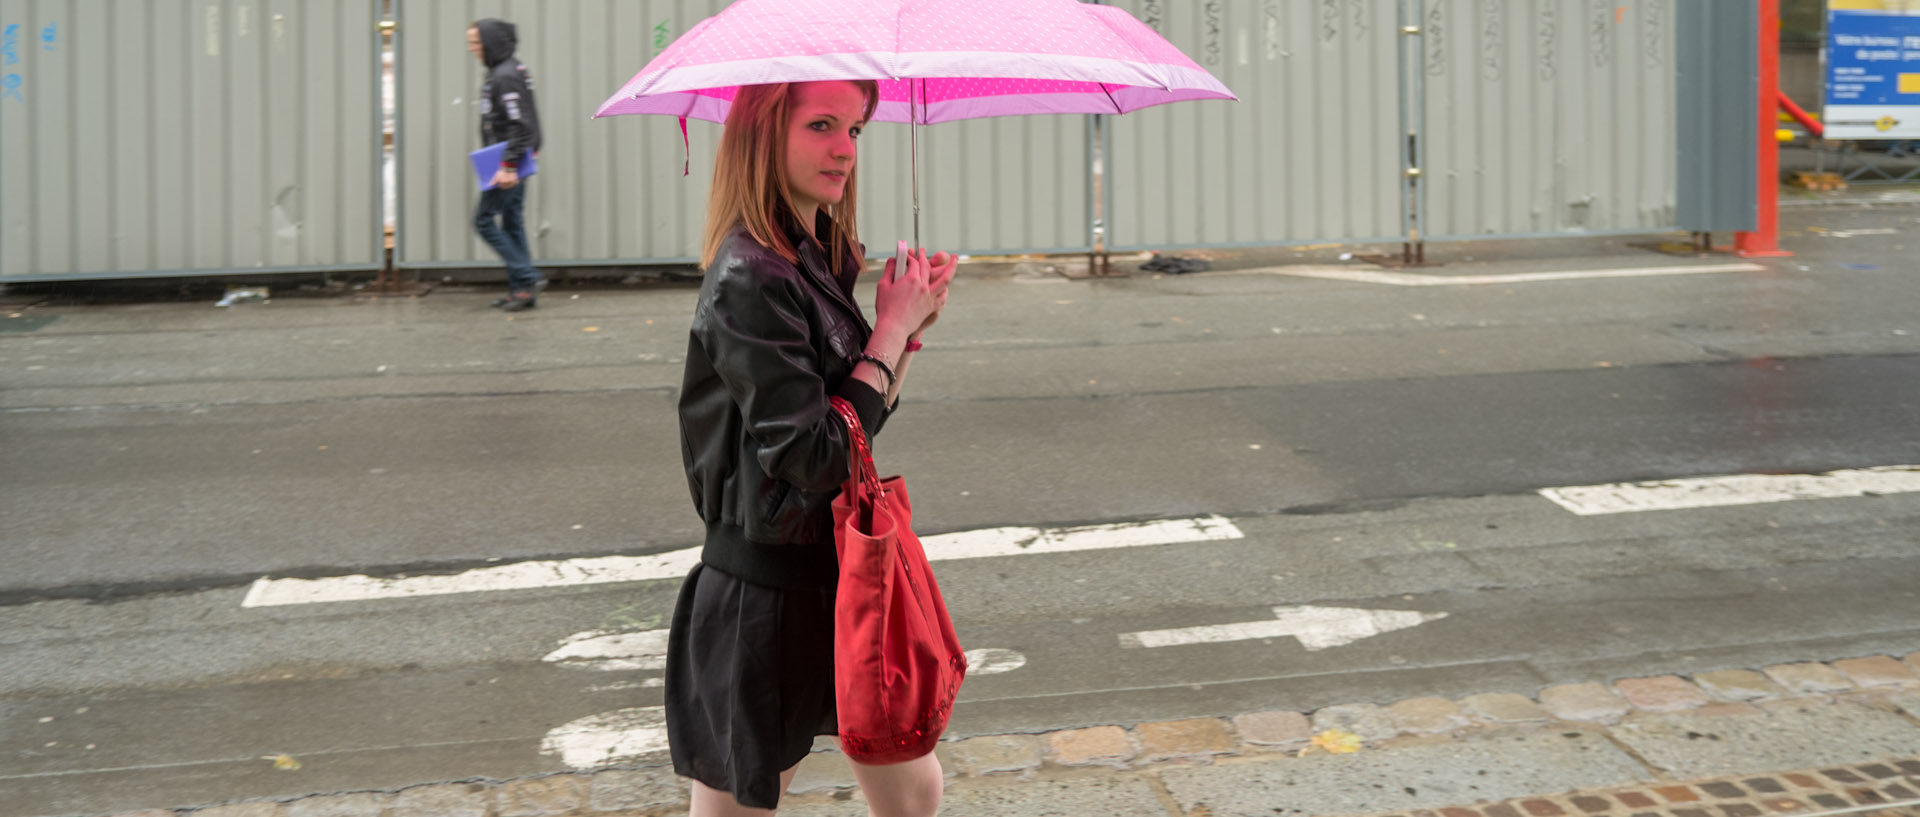 Jeune fille au parapluie rose, place de la République, à Lille.